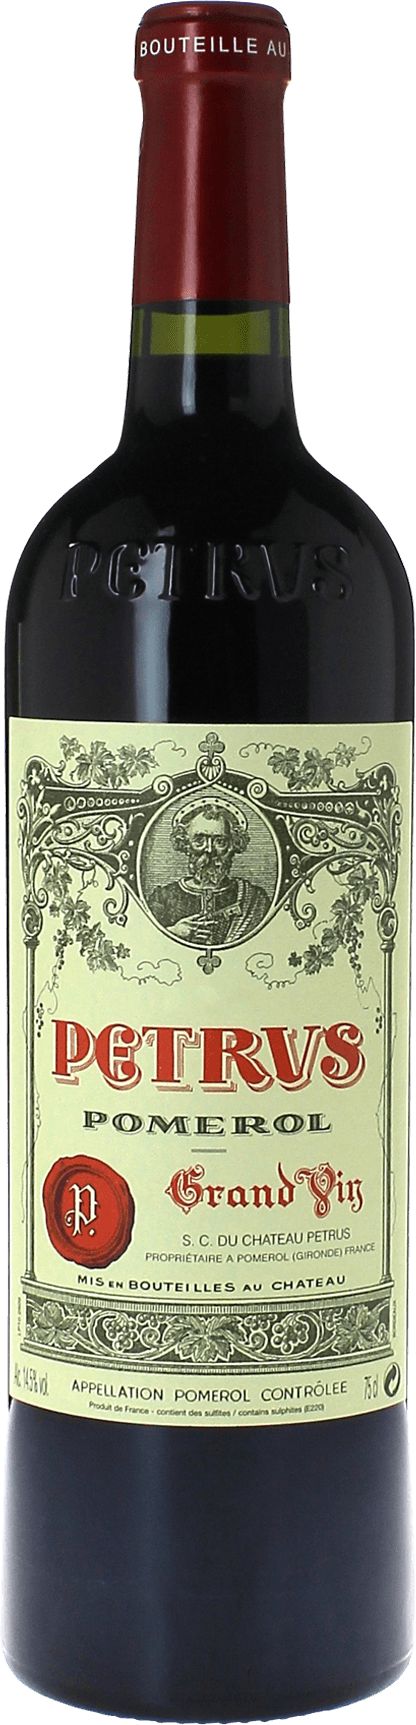 Petrus 2008  Pomerol, Bordeaux rouge